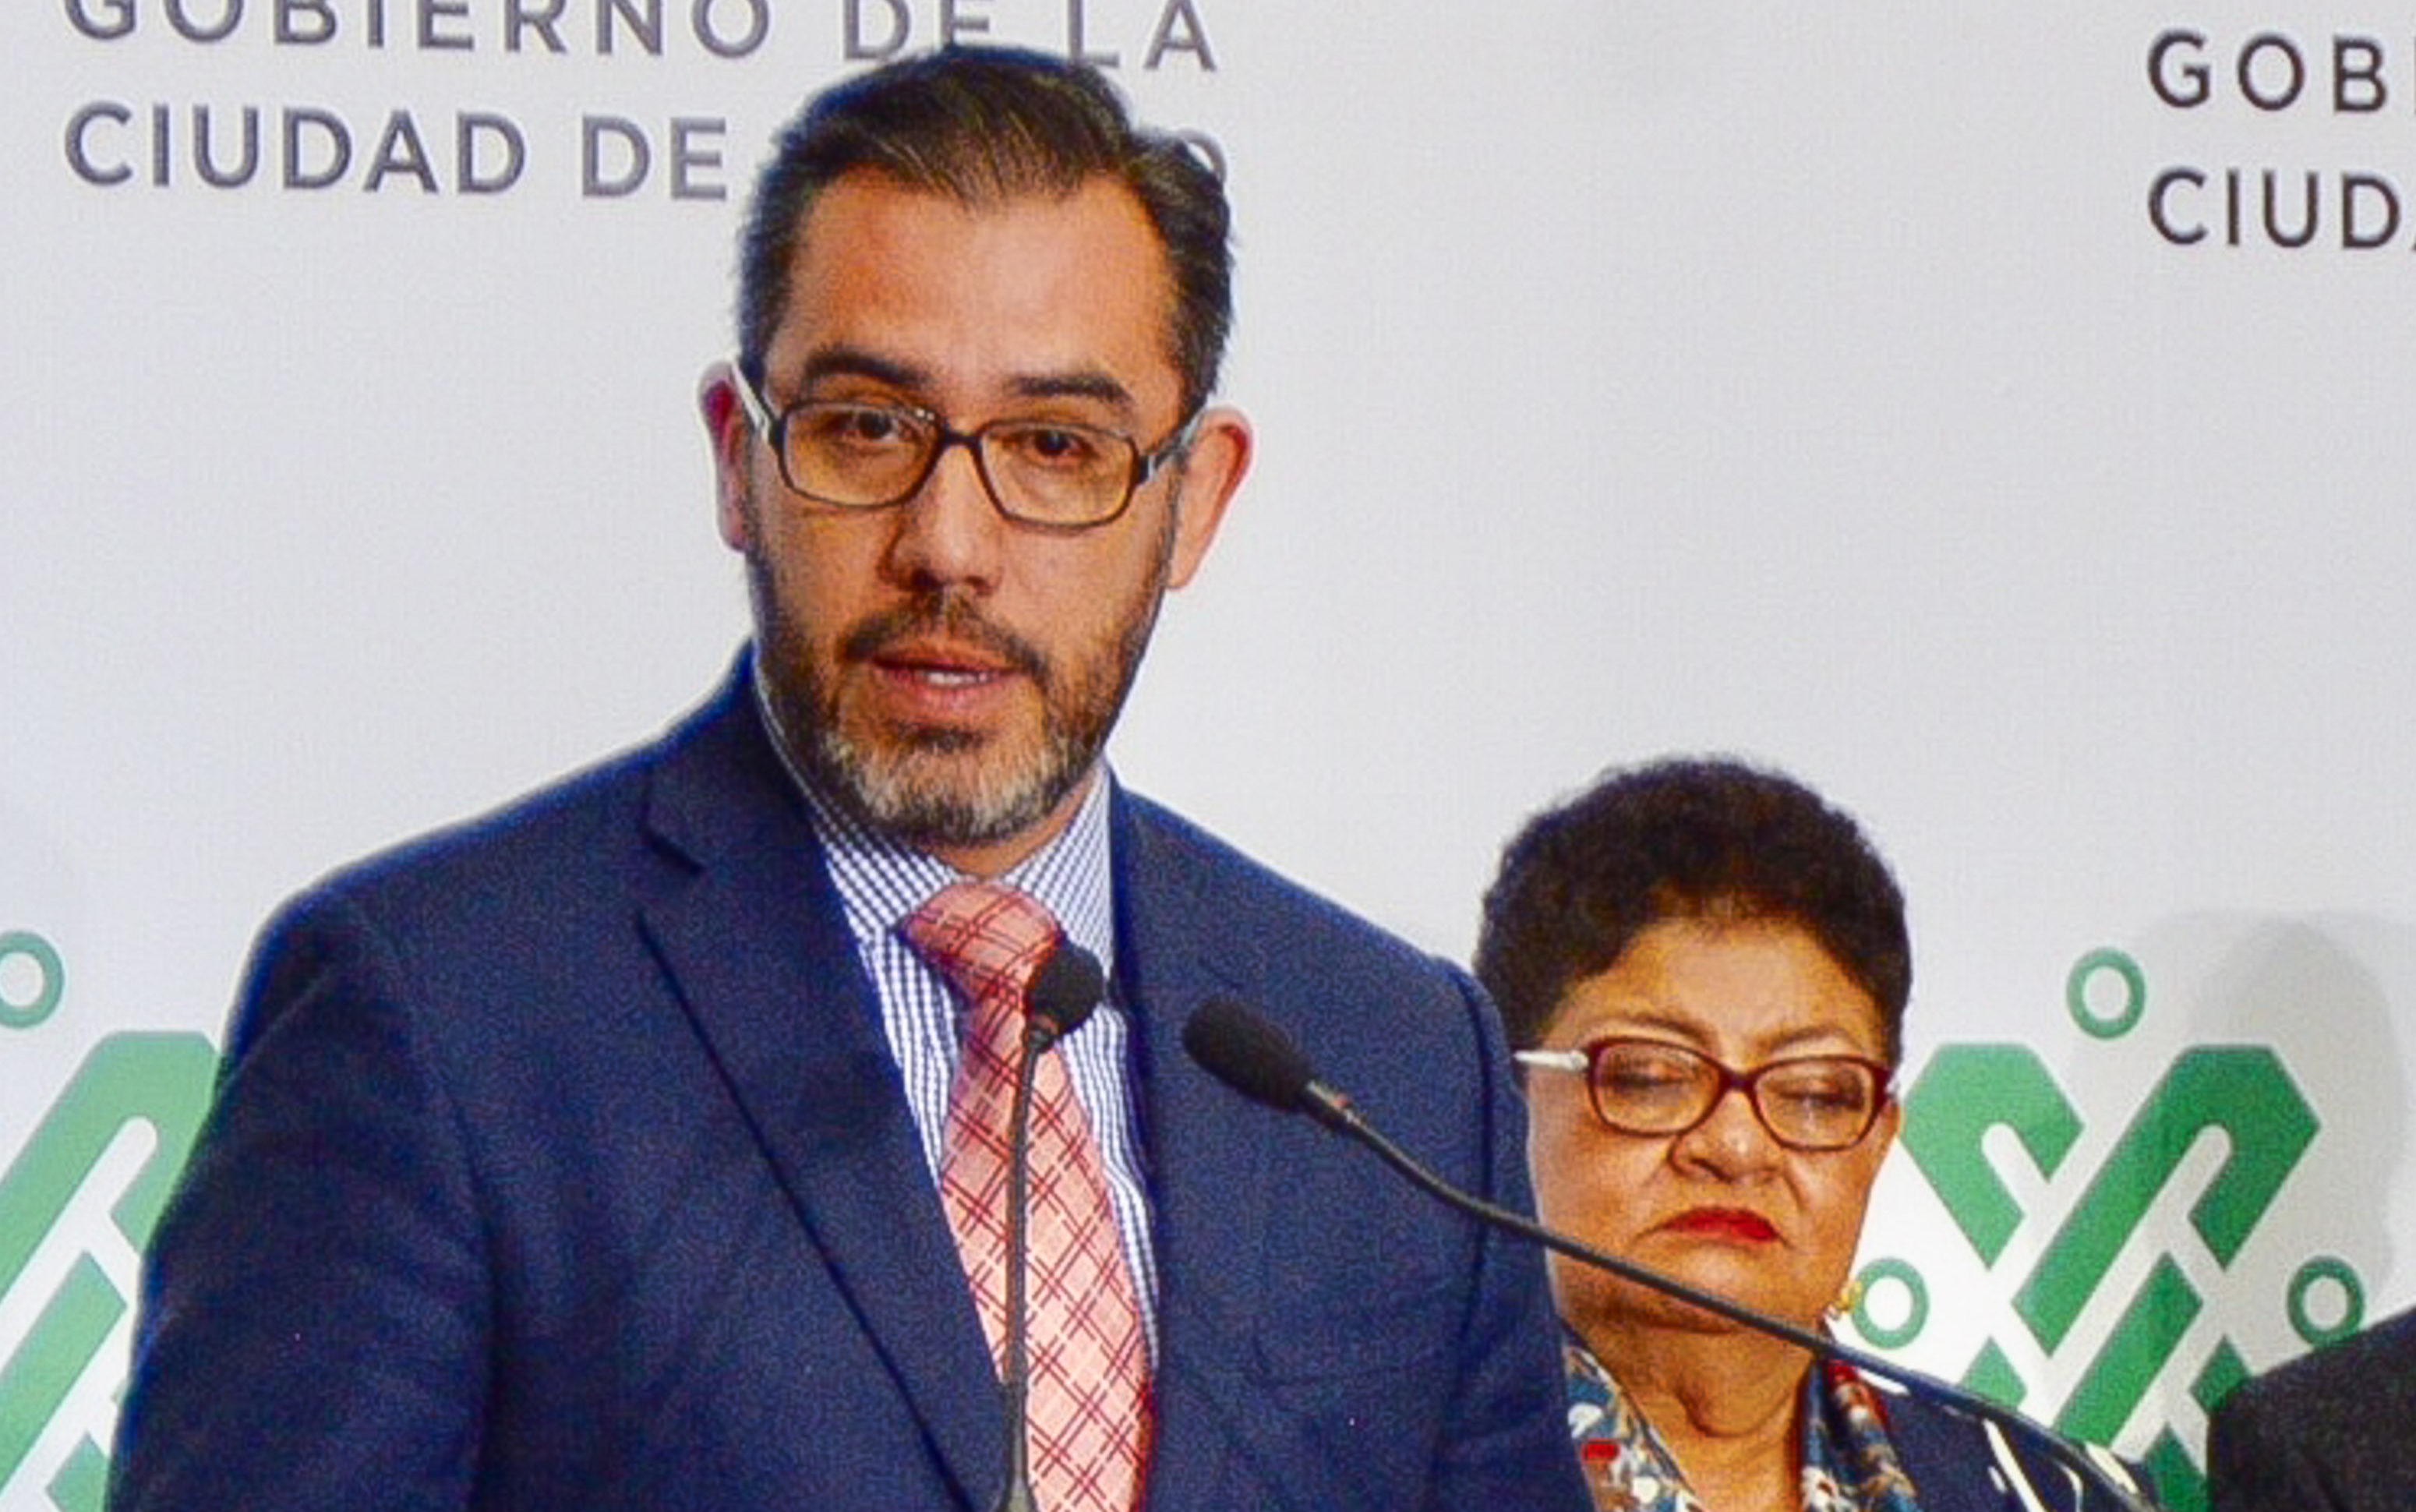 Jesus Orta Martínez, Secretario de Seguridad de la CDMX dio a conocer este día detalles sobre un intento de linchamiento al sur de la ciudad